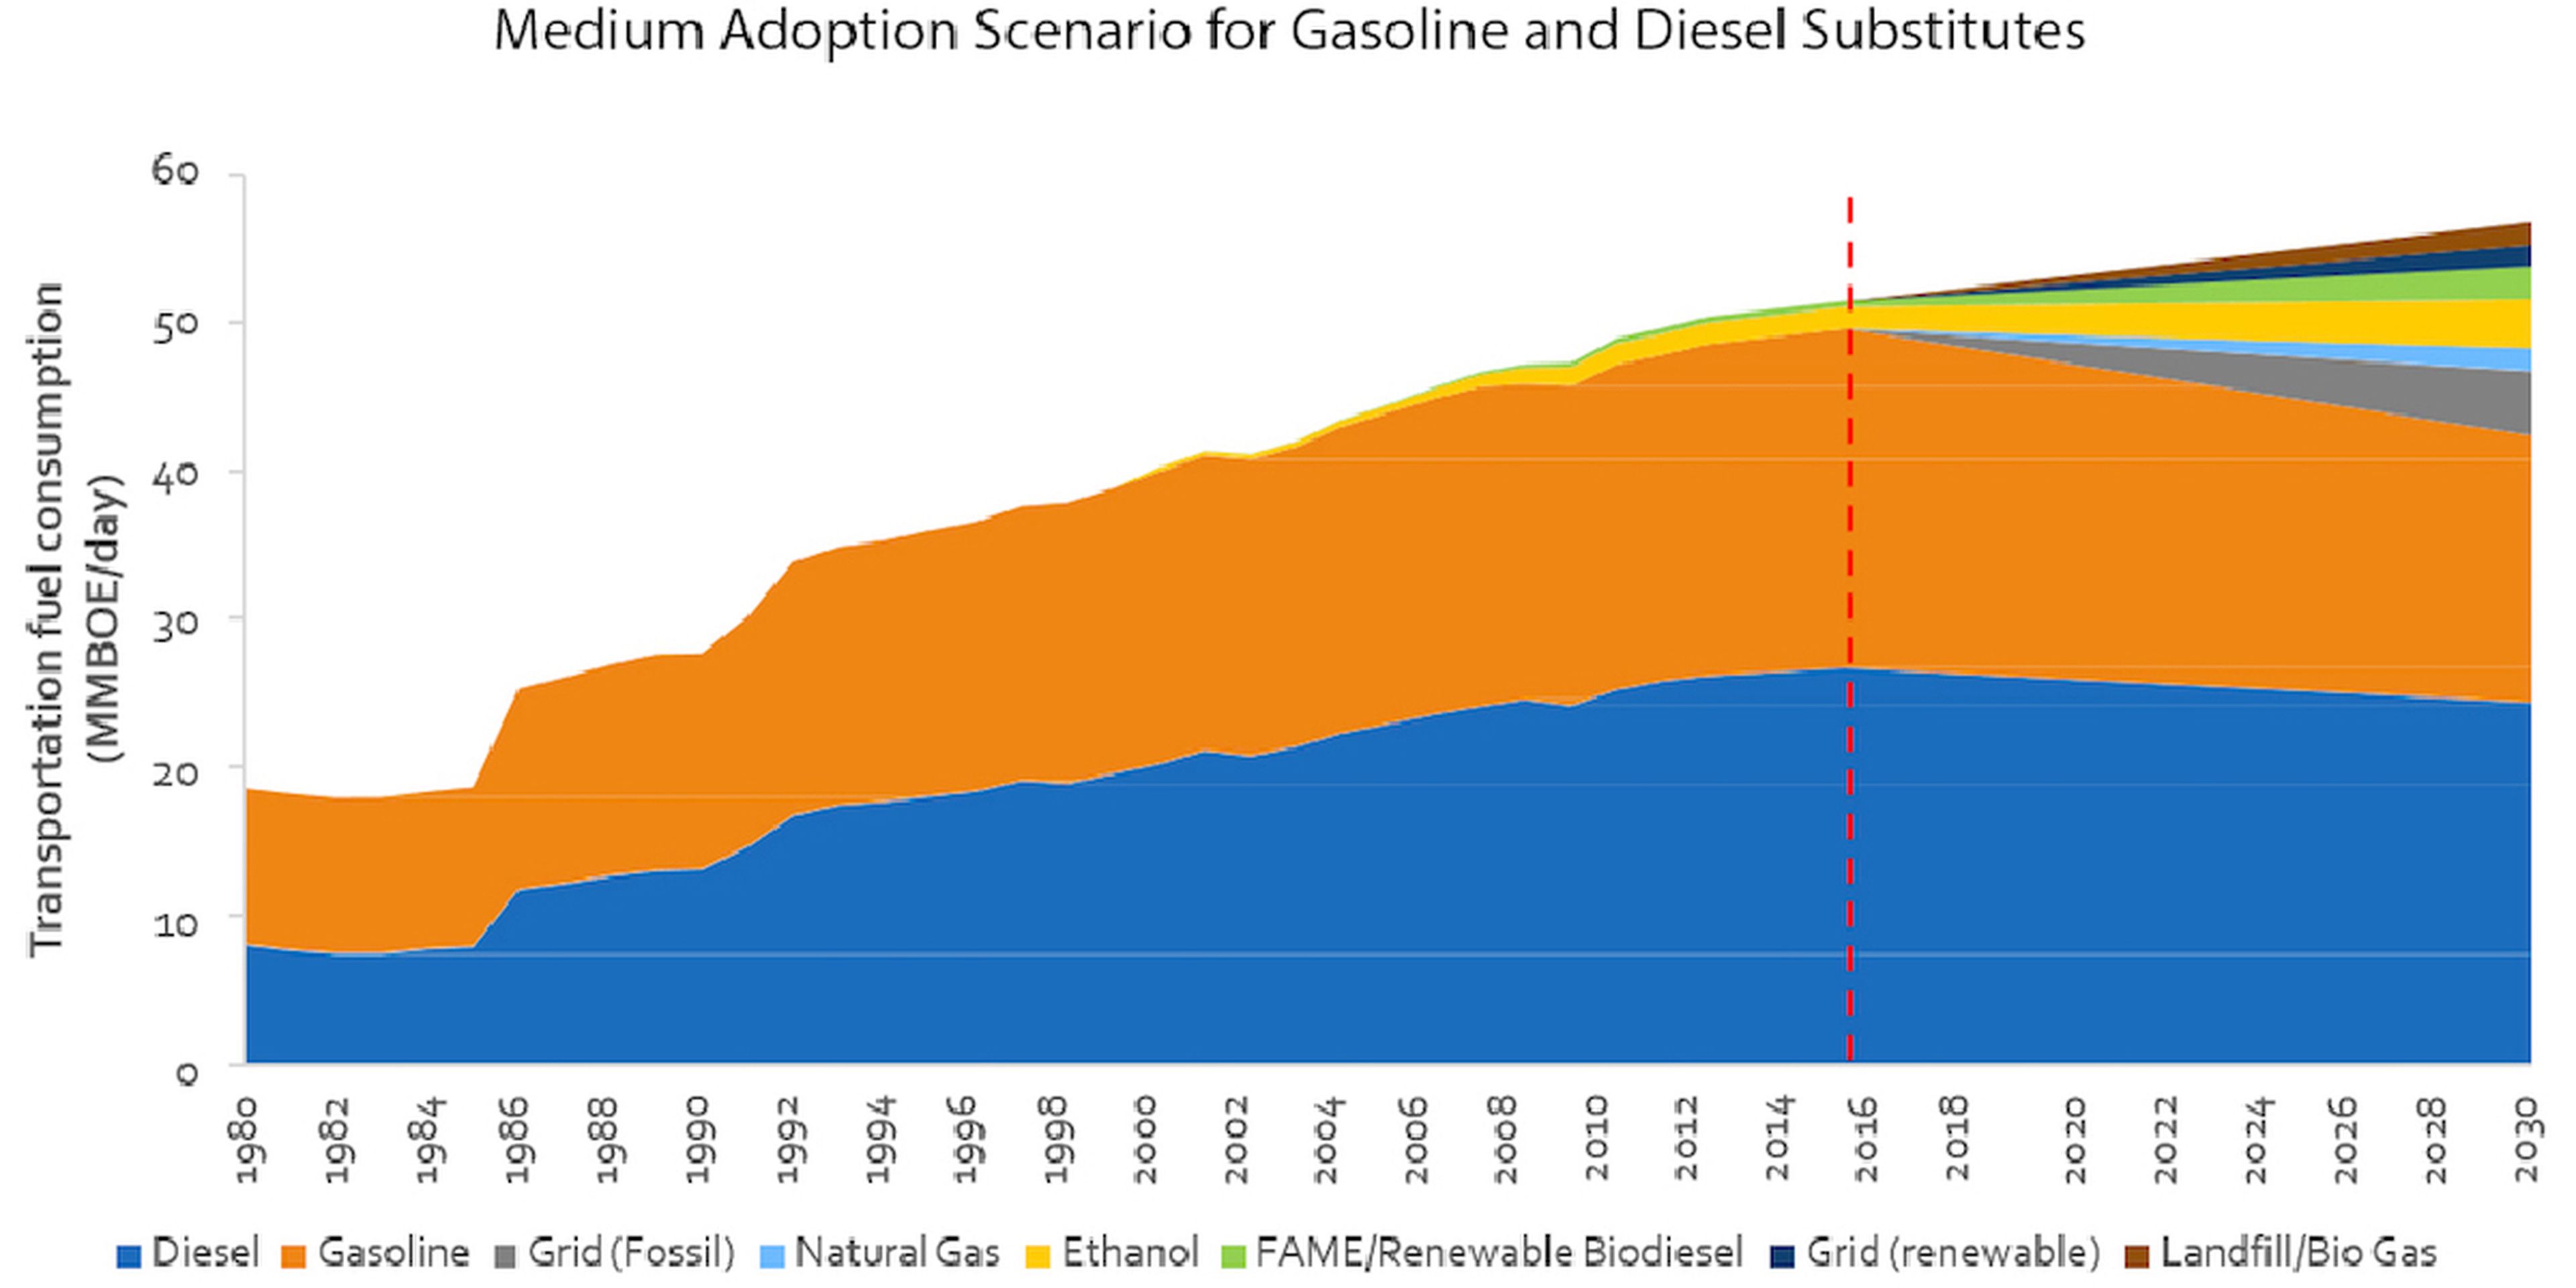 Hasta 2030, el uso del diésel como carburante prácticamente no se reducirá.